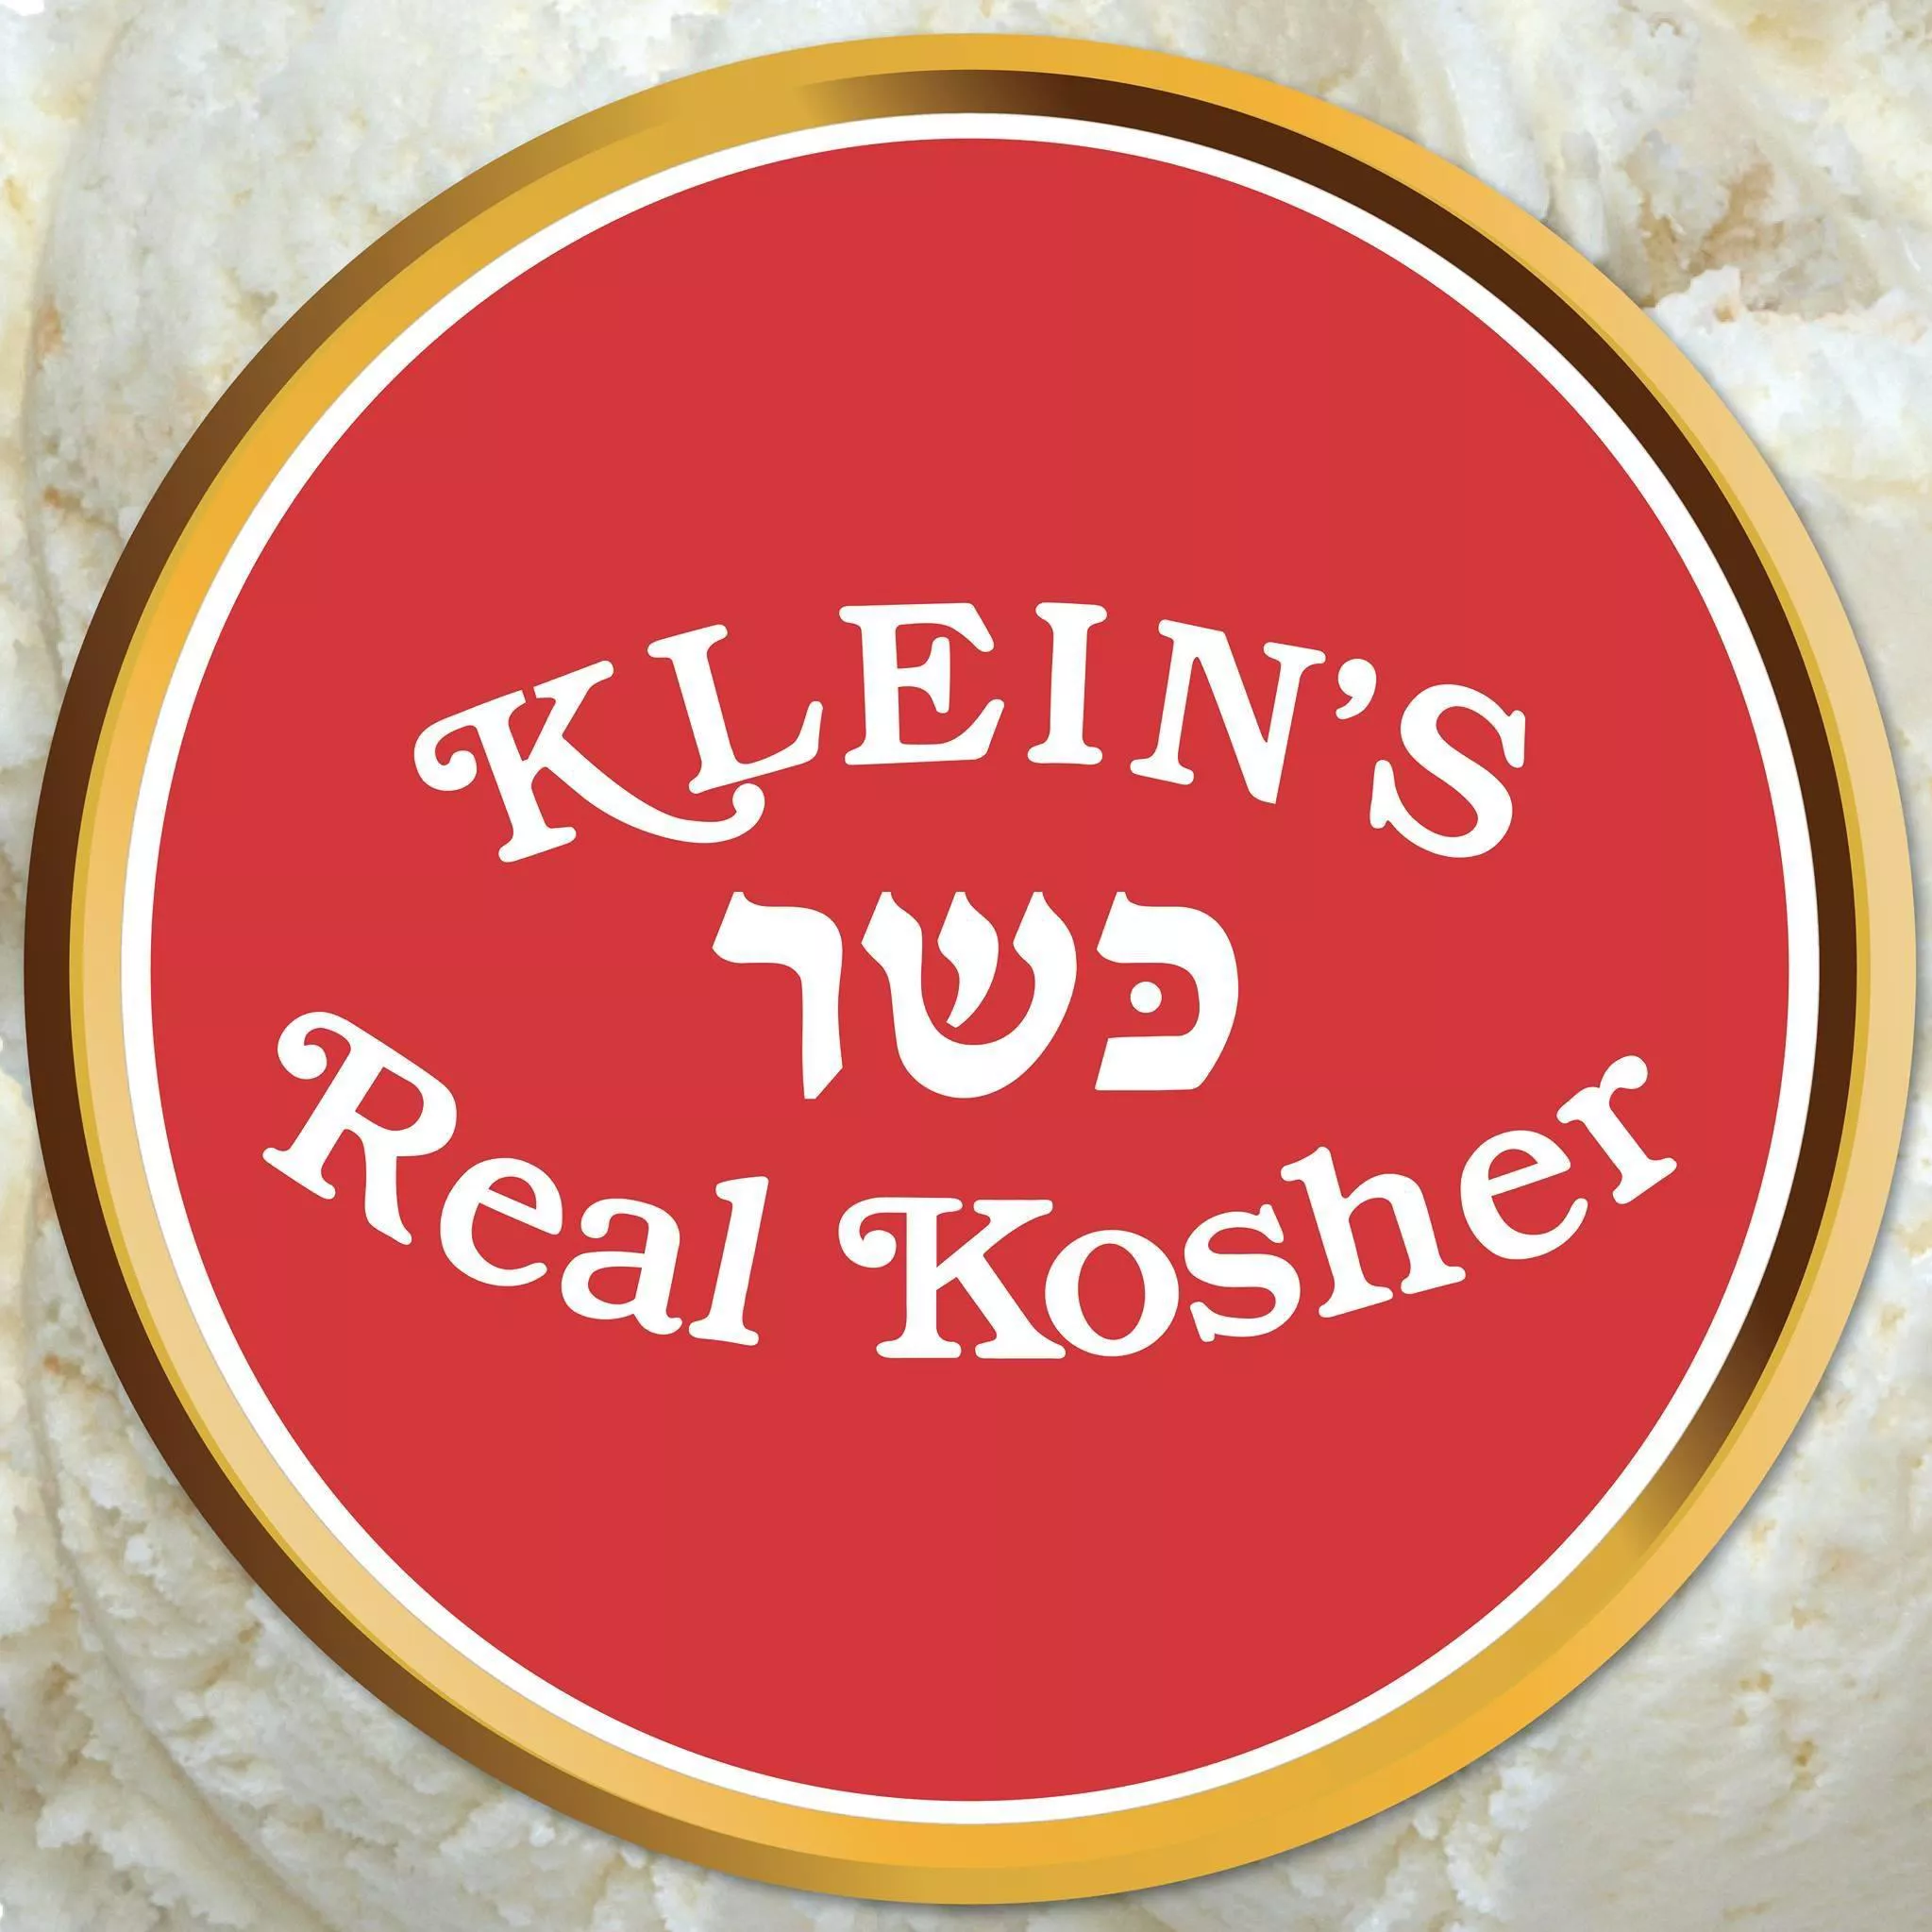 Kleins Kosher Ice Cream